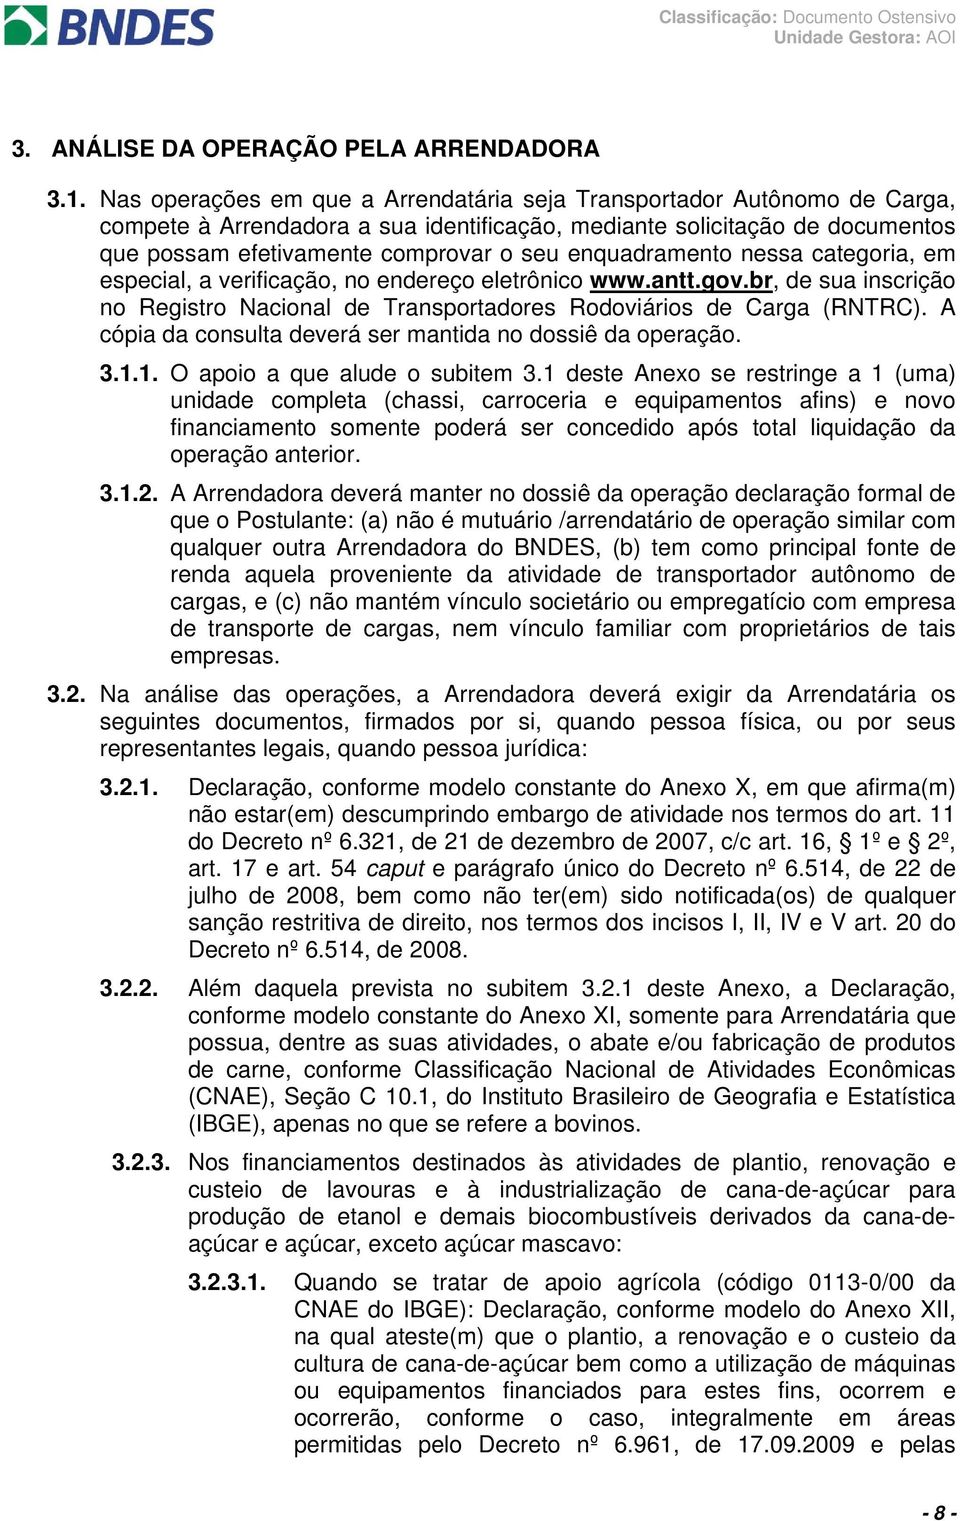 enquadramento nessa categoria, em especial, a verificação, no endereço eletrônico www.antt.gov.br, de sua inscrição no Registro Nacional de Transportadores Rodoviários de Carga (RNTRC).